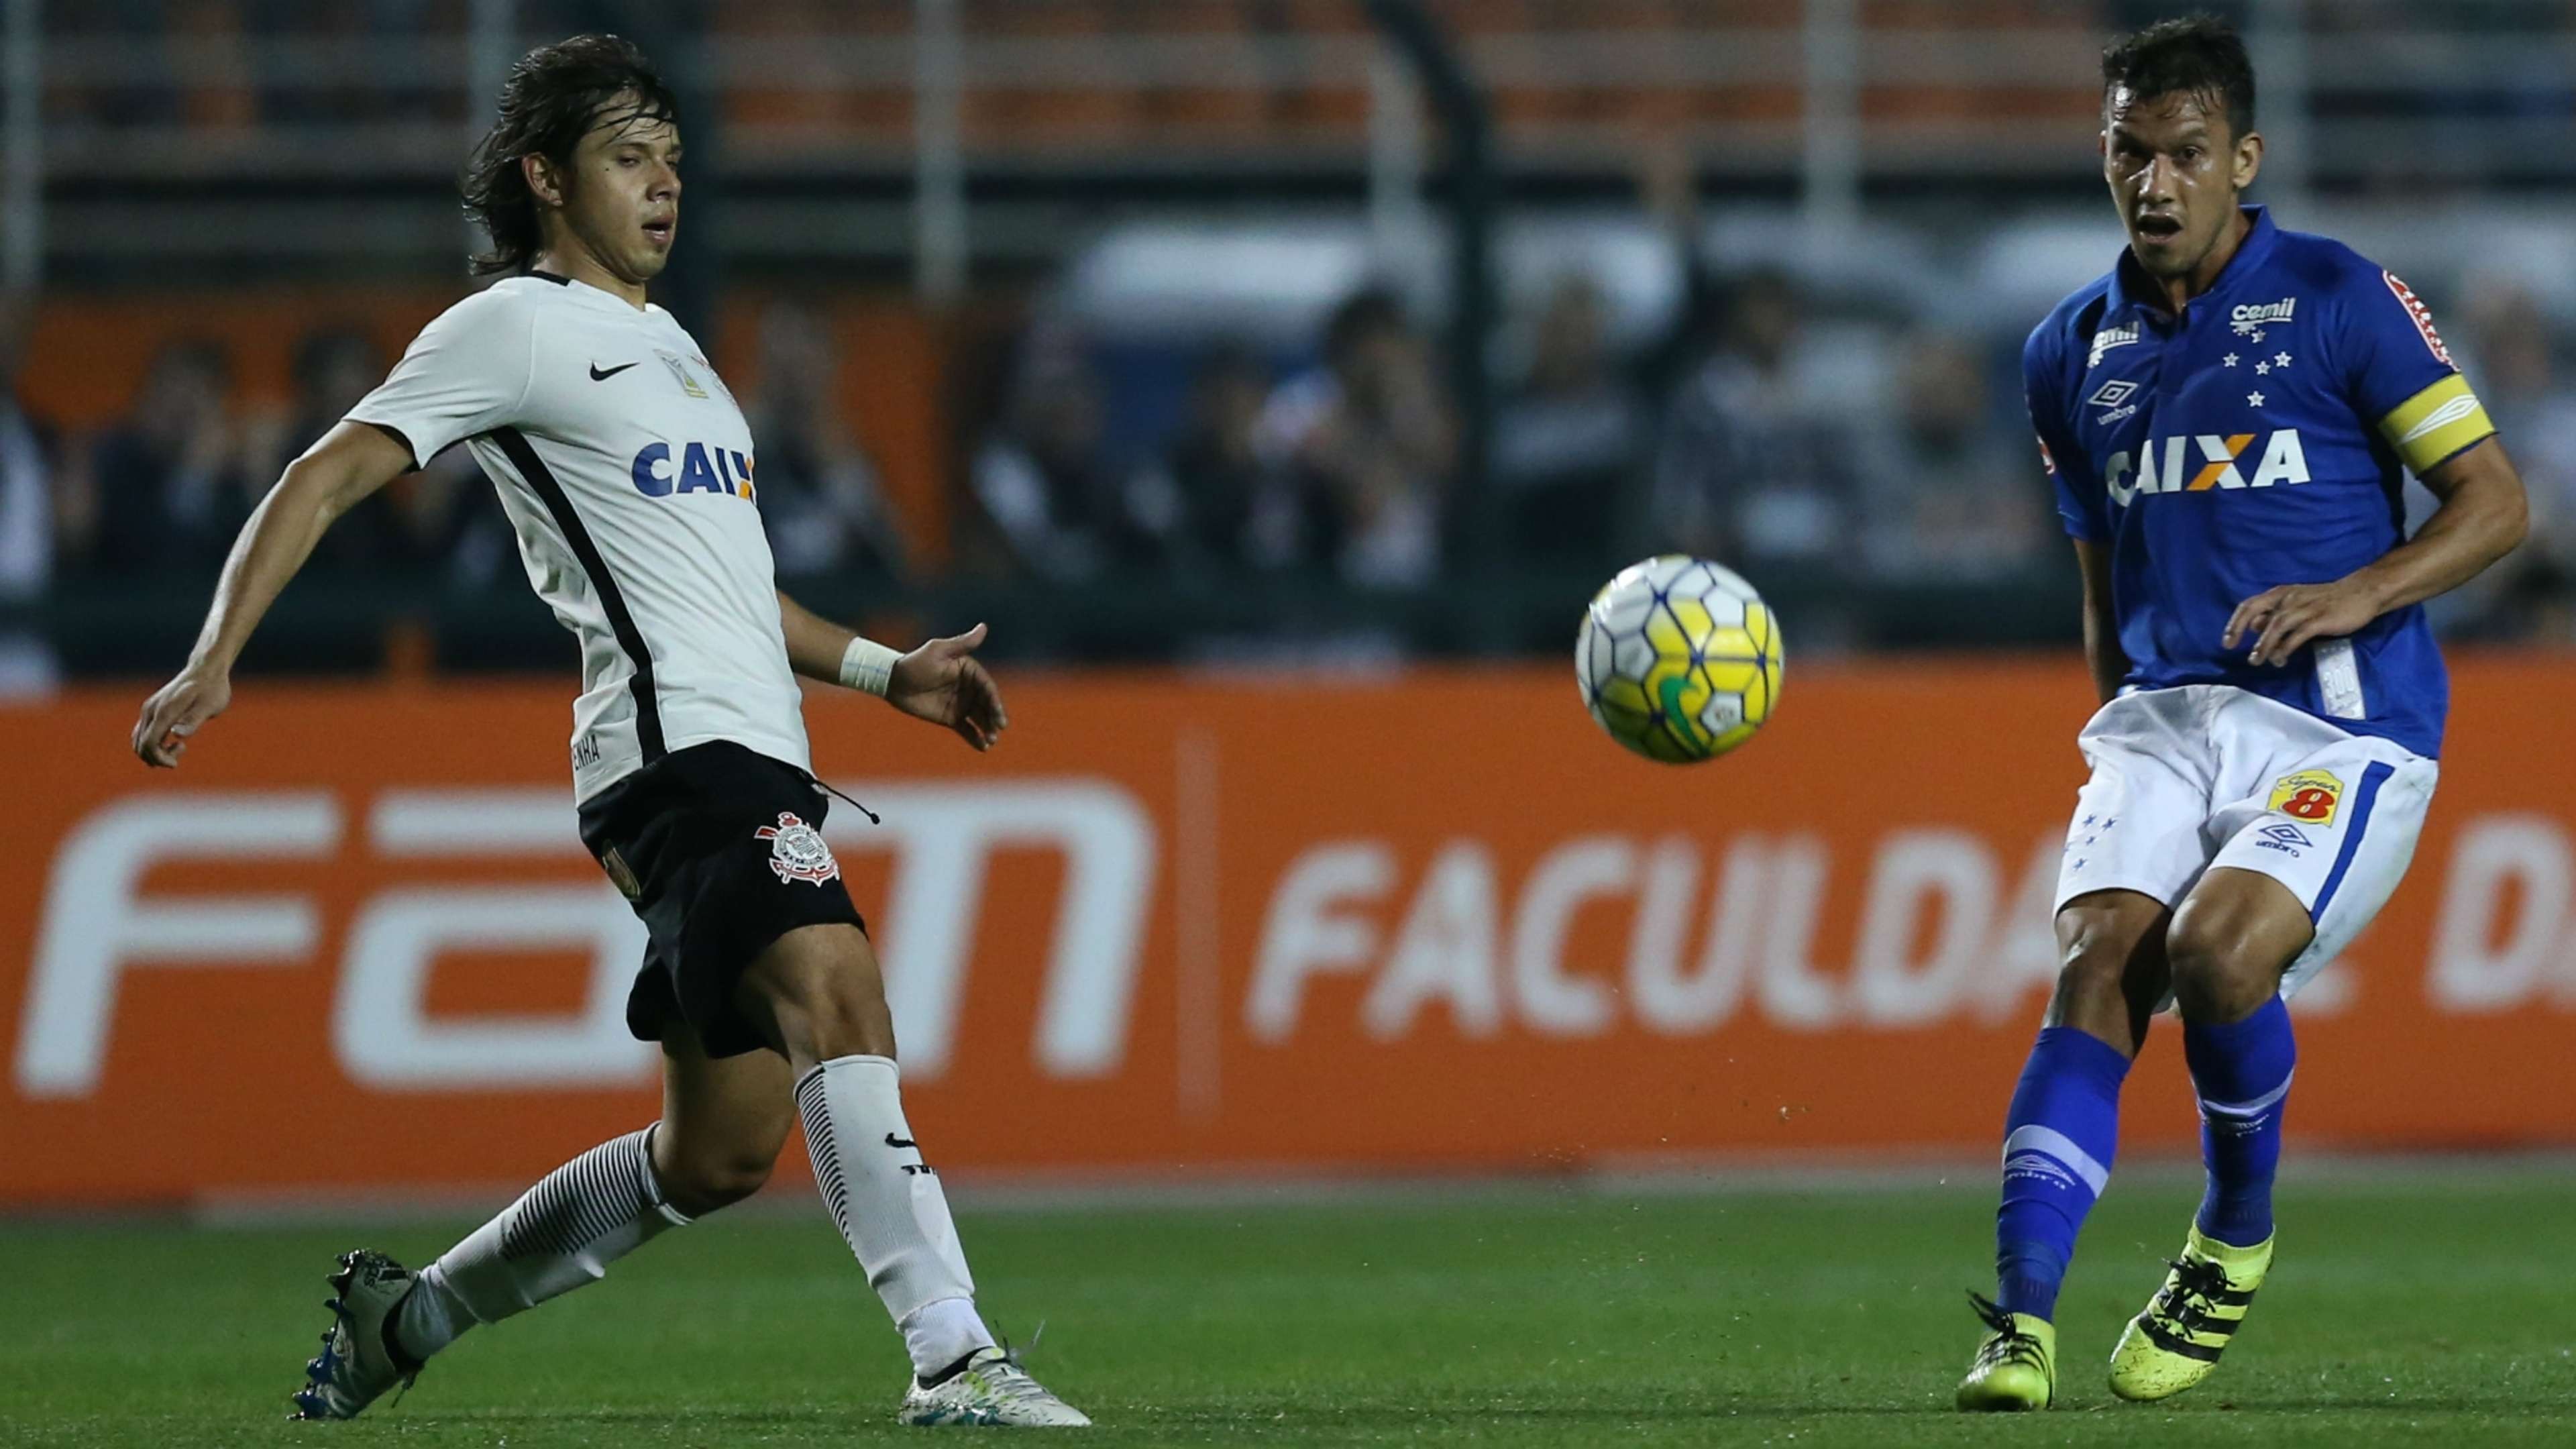 Henrique Corinthians Cruzeiro Campeonato Brasileiro 08082016